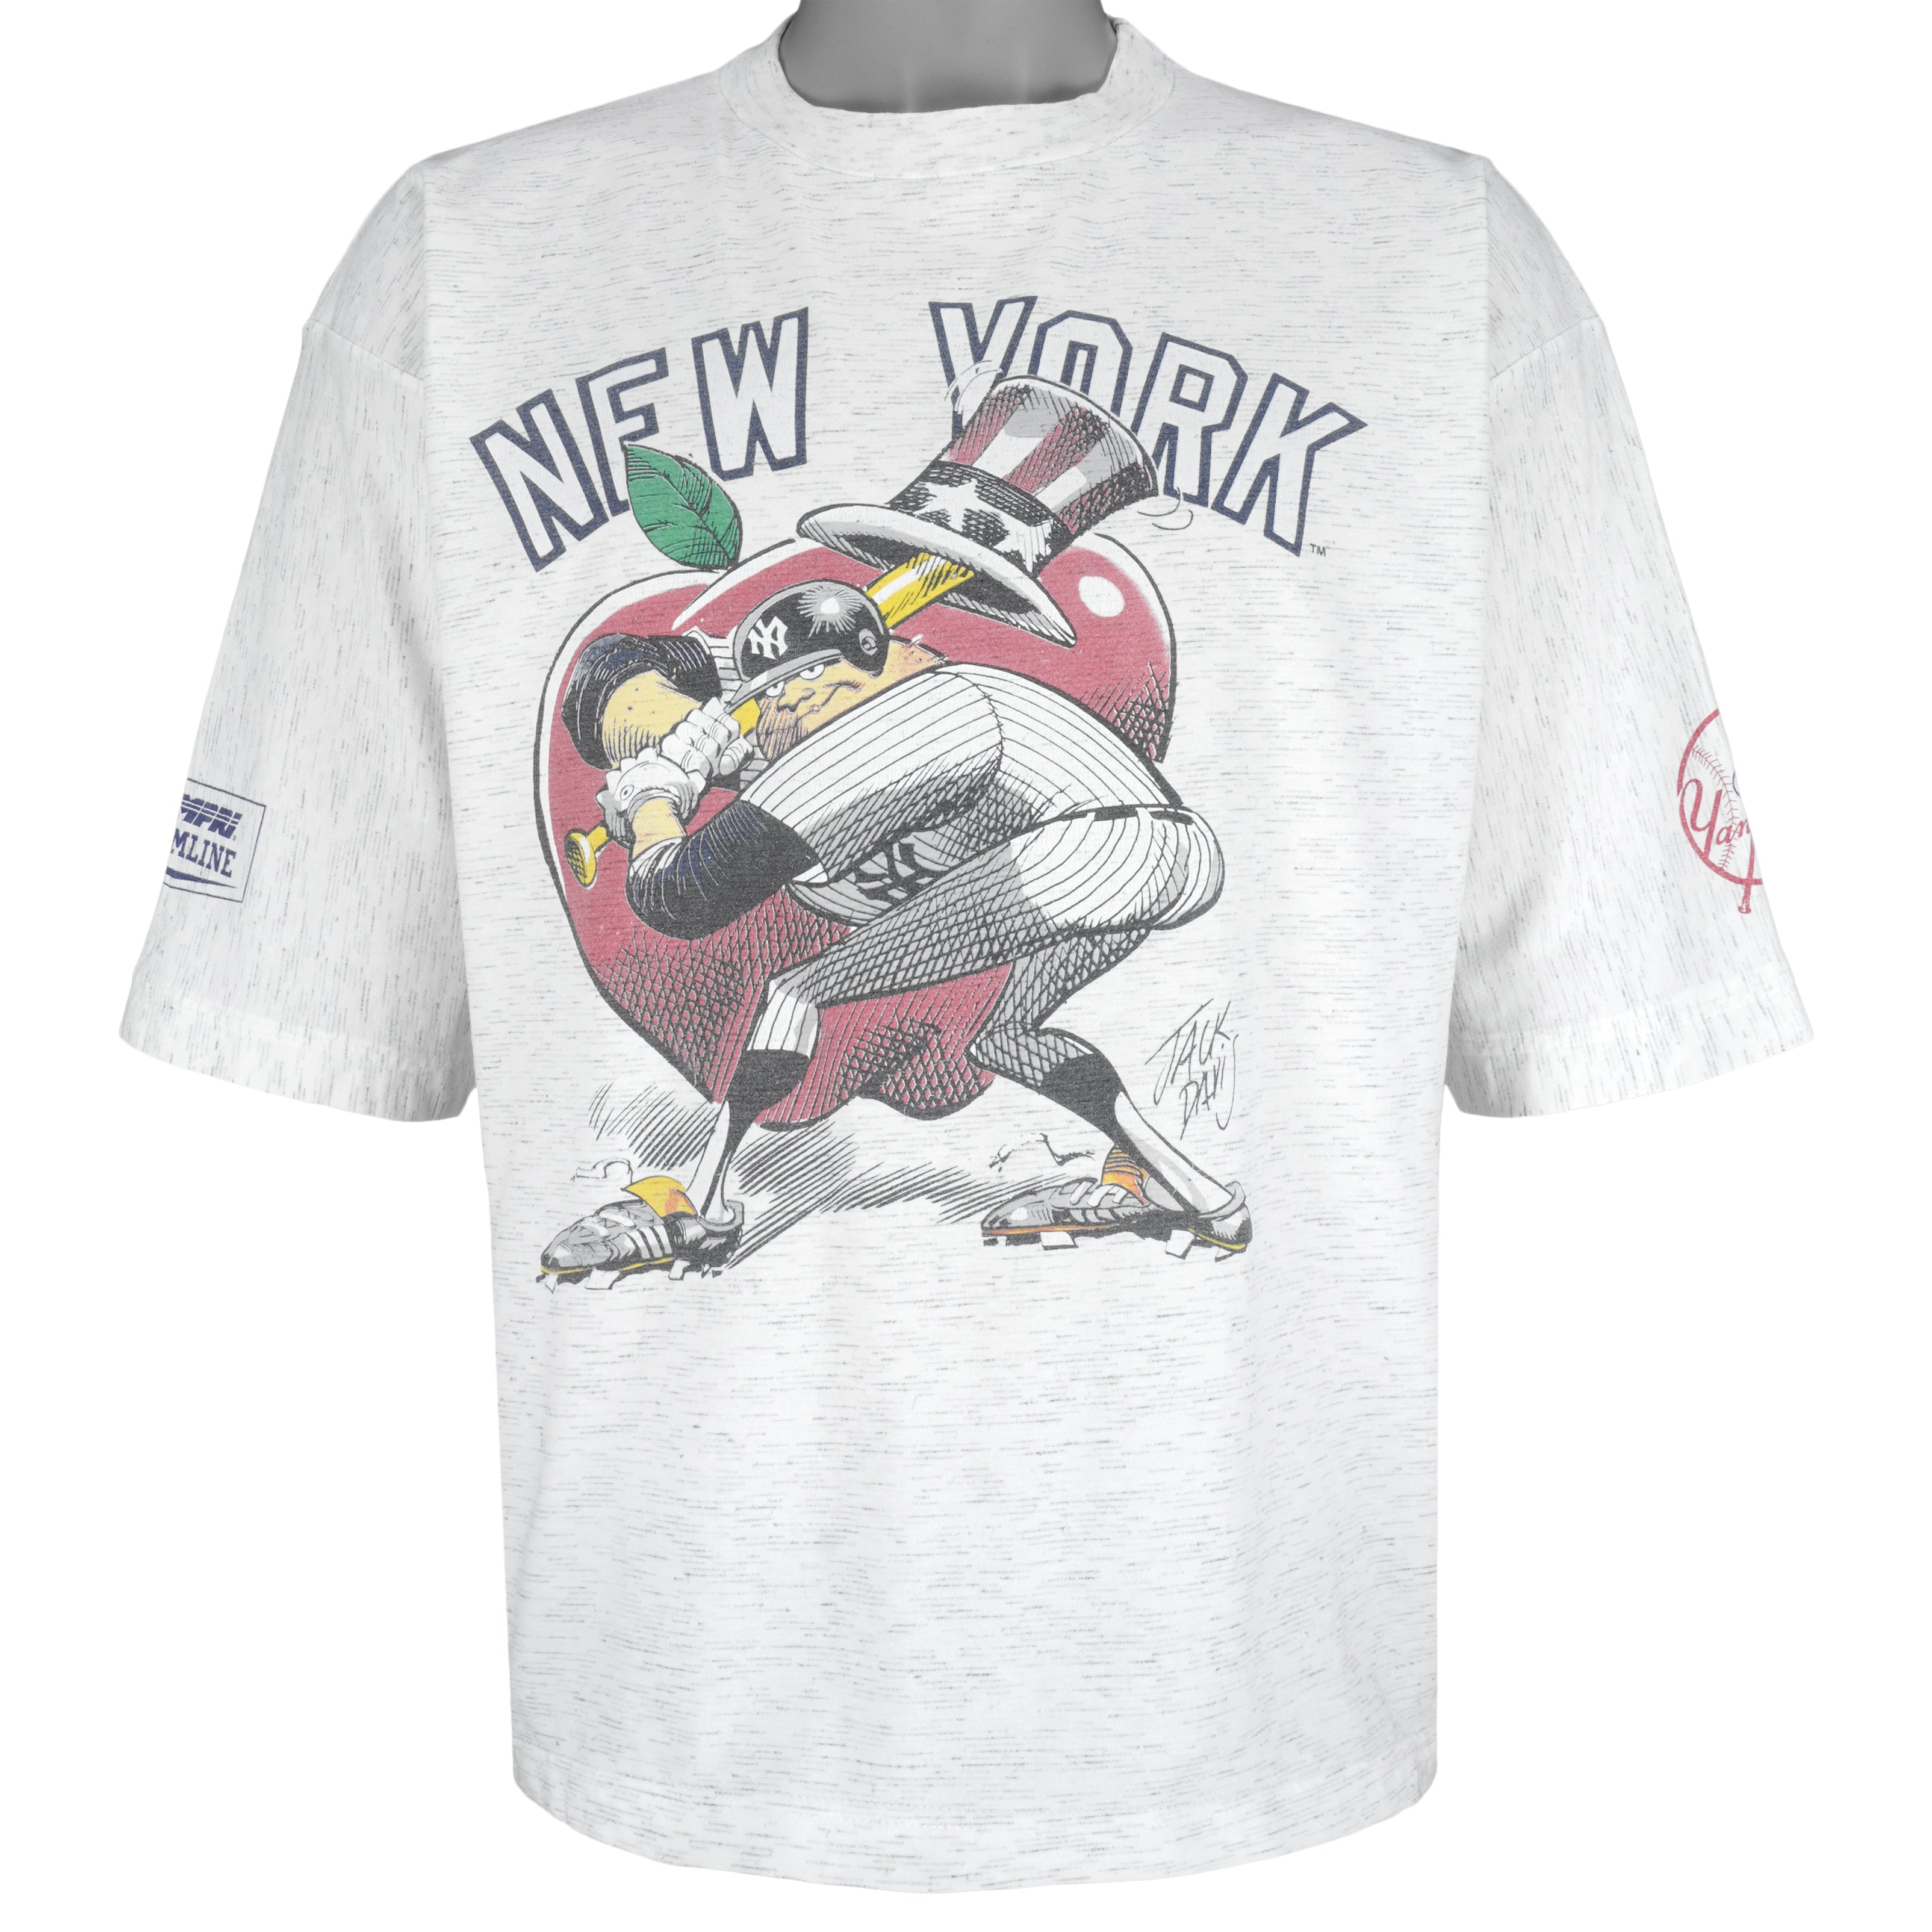 New Era MLB Team Logo New York Yankees Sleeveless T-Shirt Yellow S Man